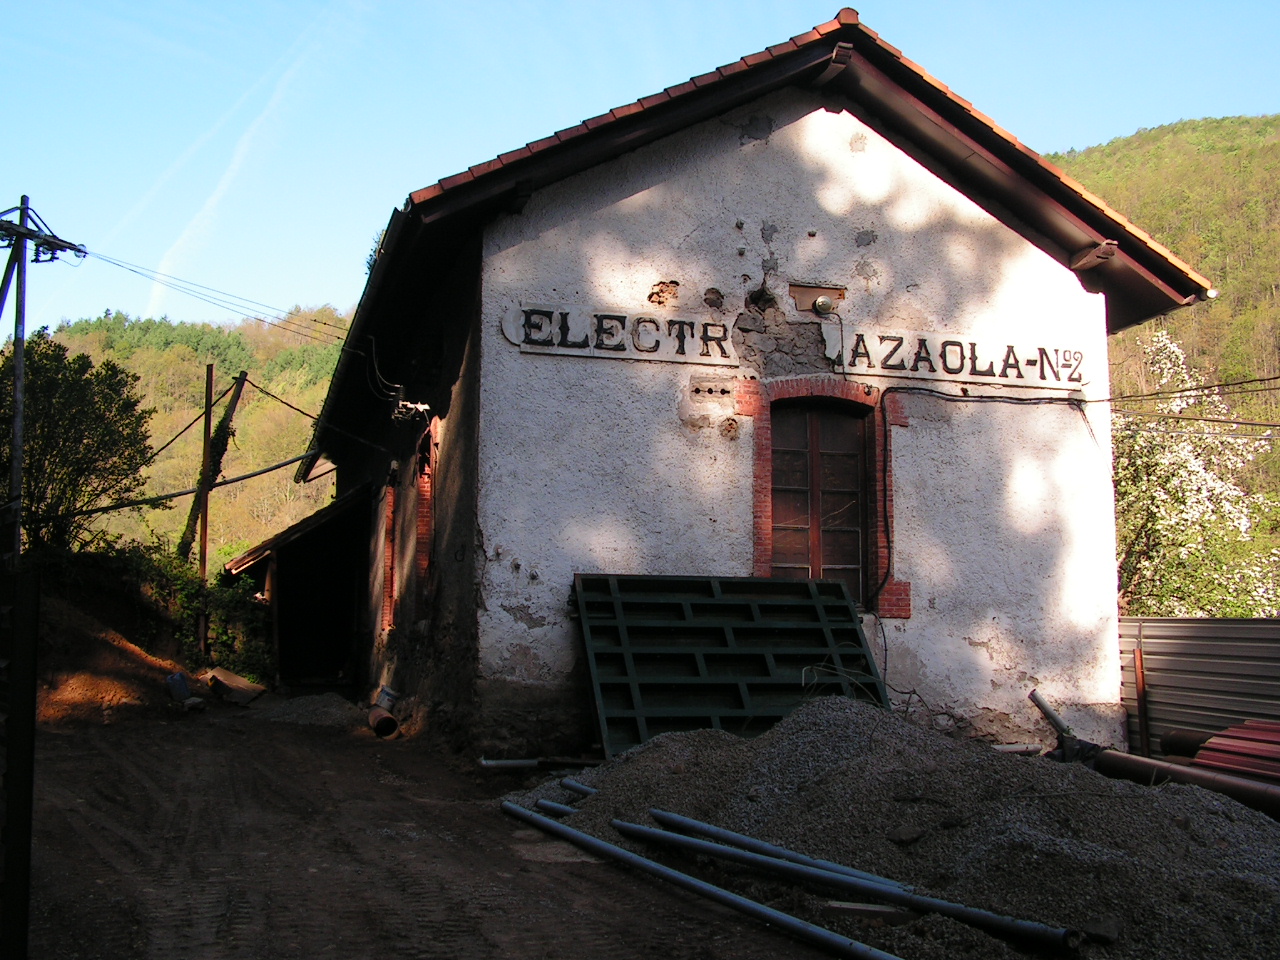 Subestacion nº 2 - Electra del Plazaola, foto : Juan Manero